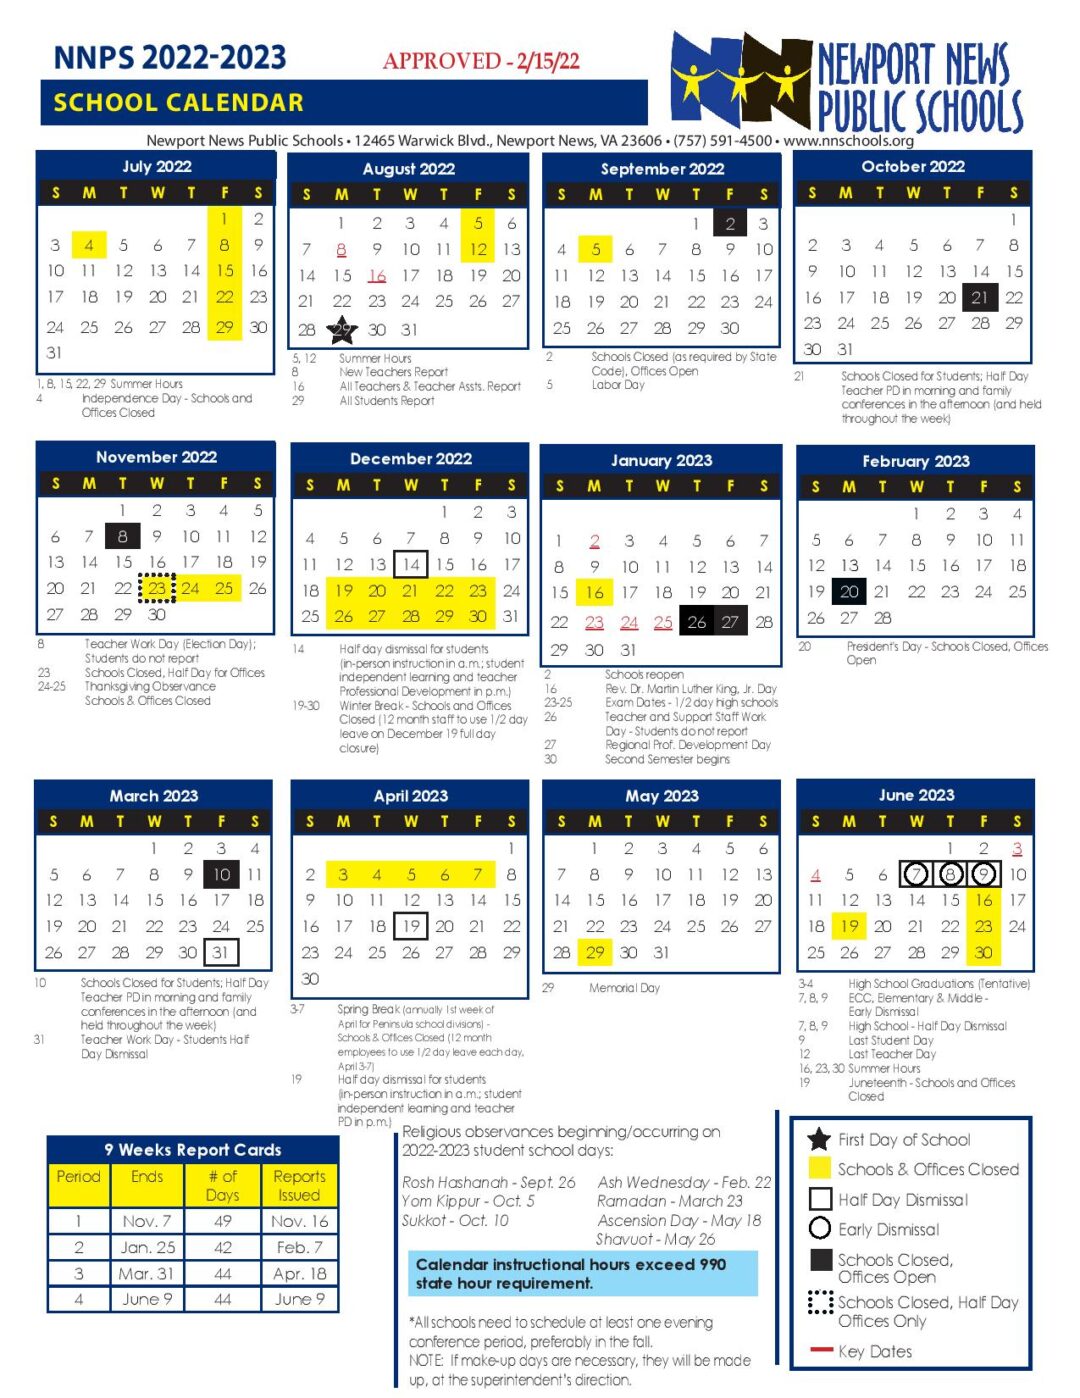 Newport News Public Schools Calendar 2022-2023 PDF